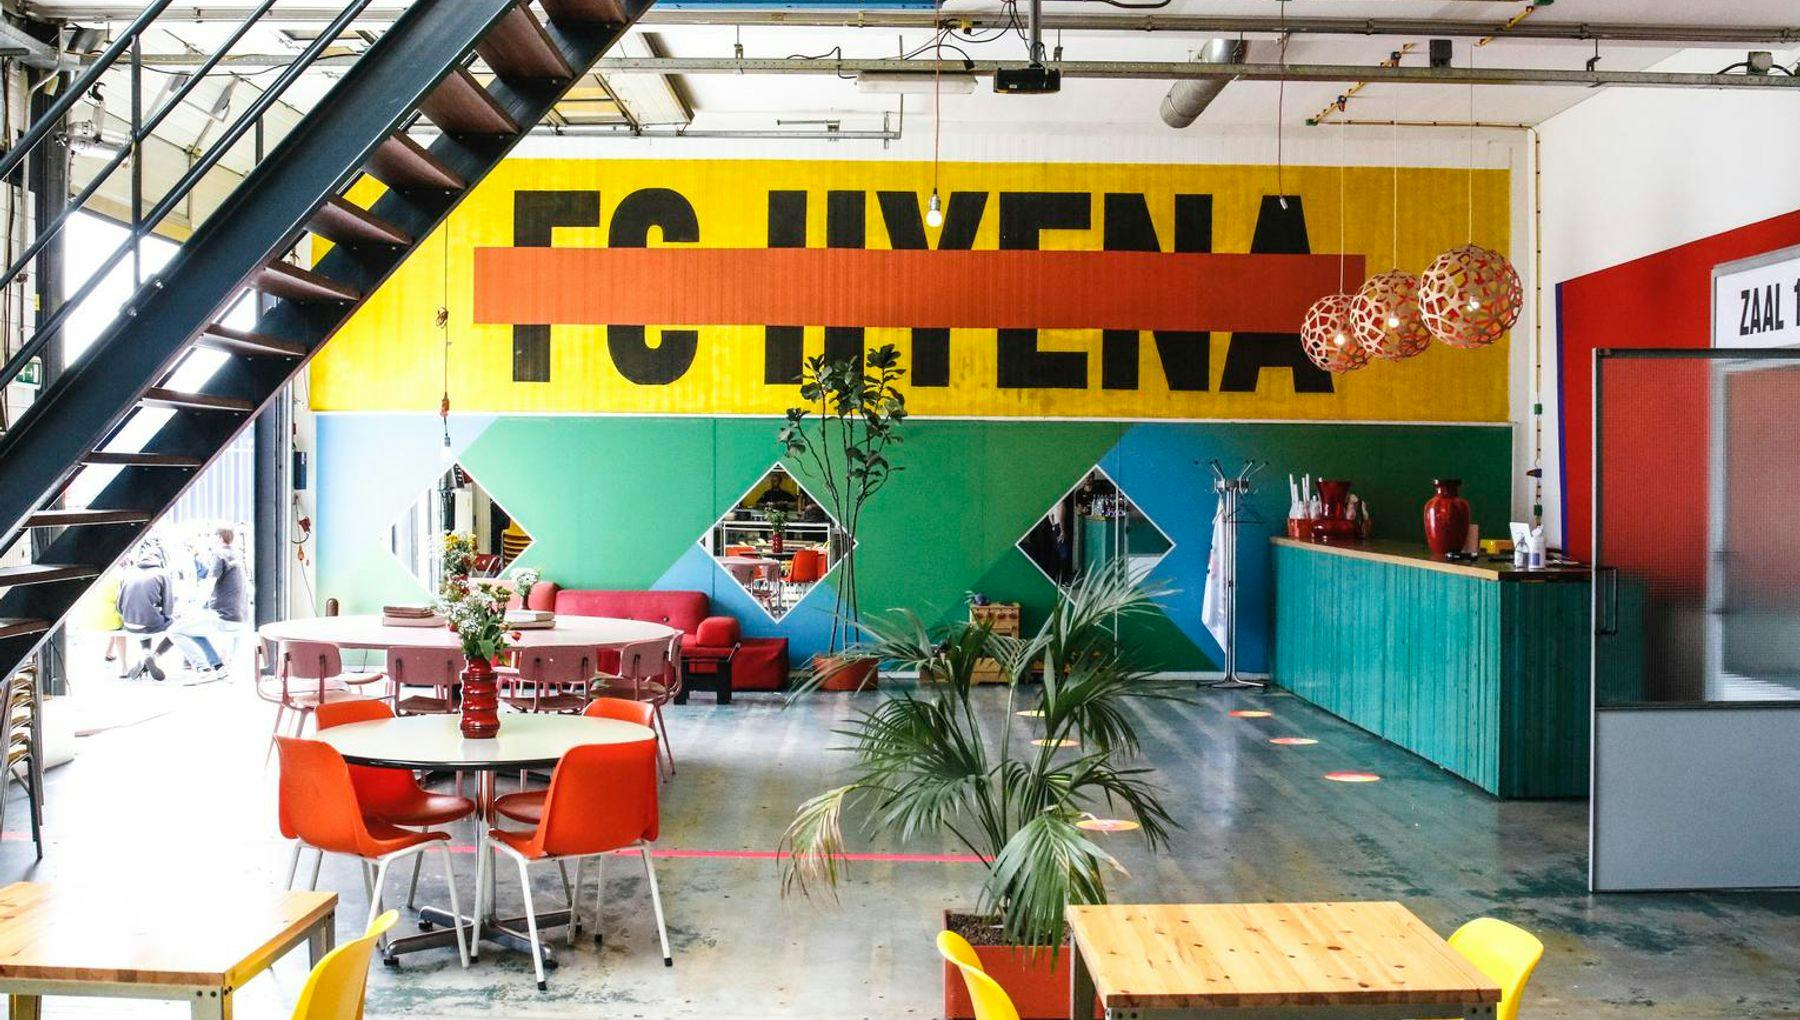 FC Hyena cinema cafe restaurant in Noord